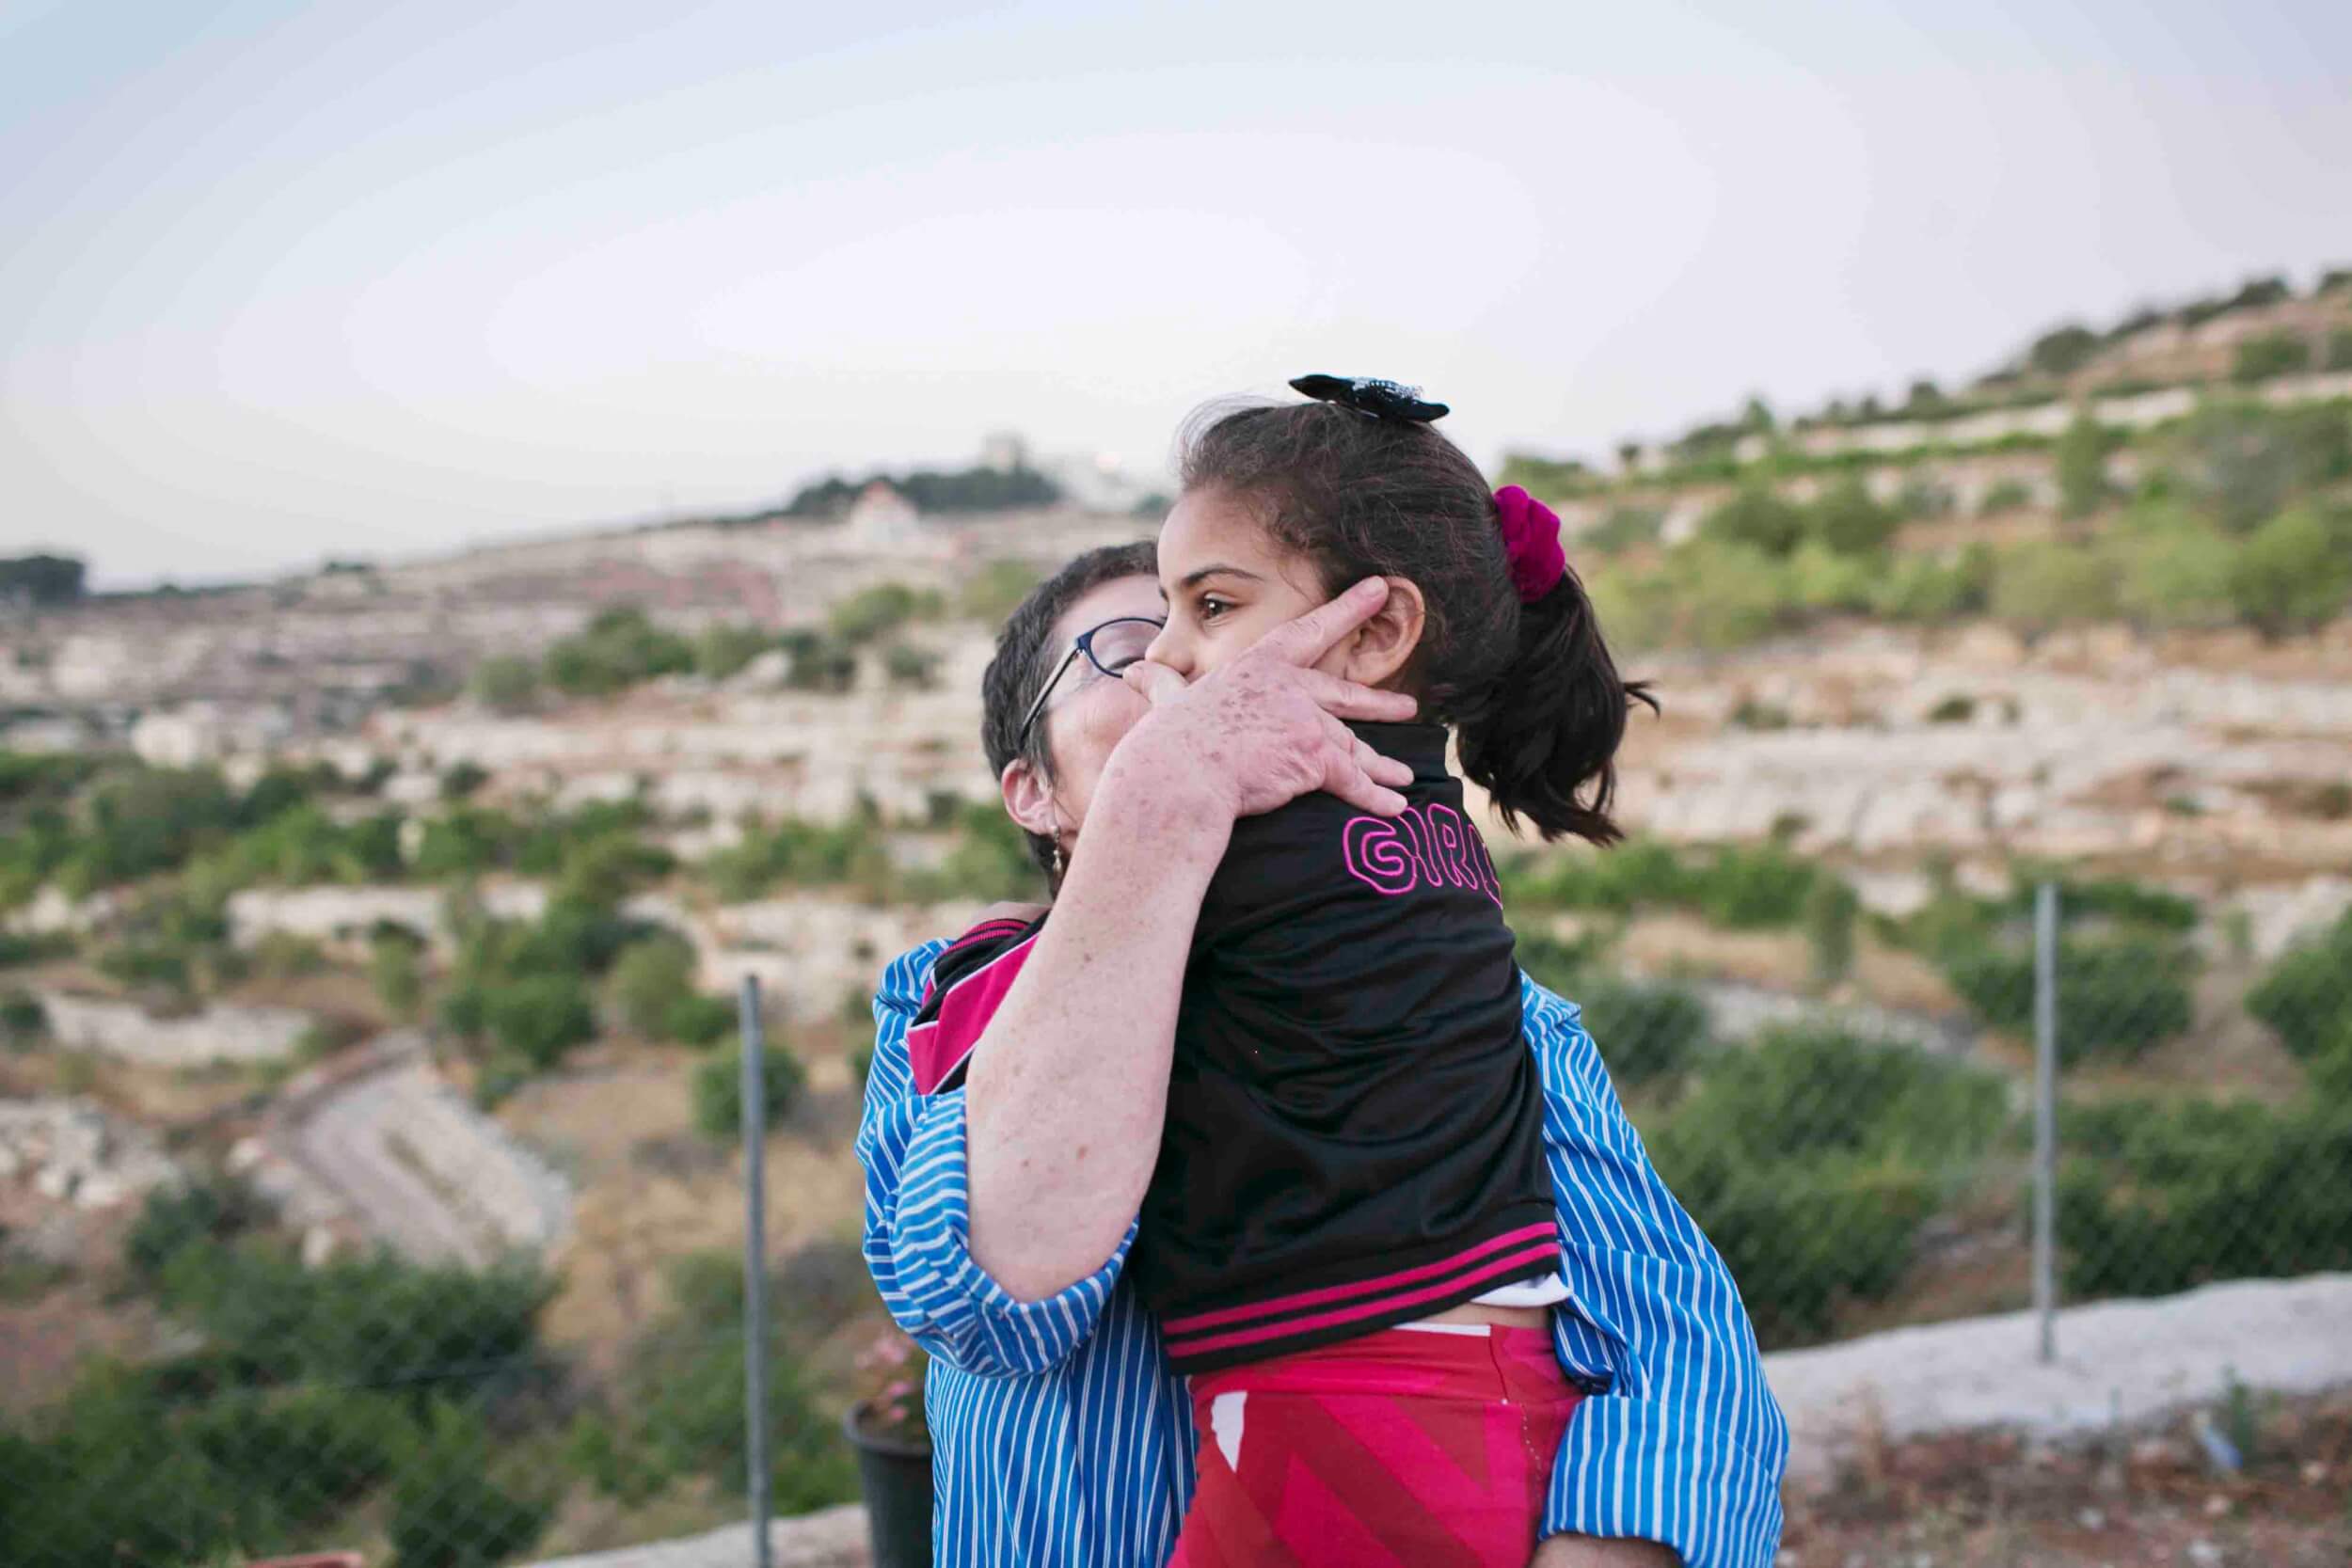 The Israeli women's main project now is to support a local kindergarten in Beit Ummar. (Photo: Saara Olkkonen)